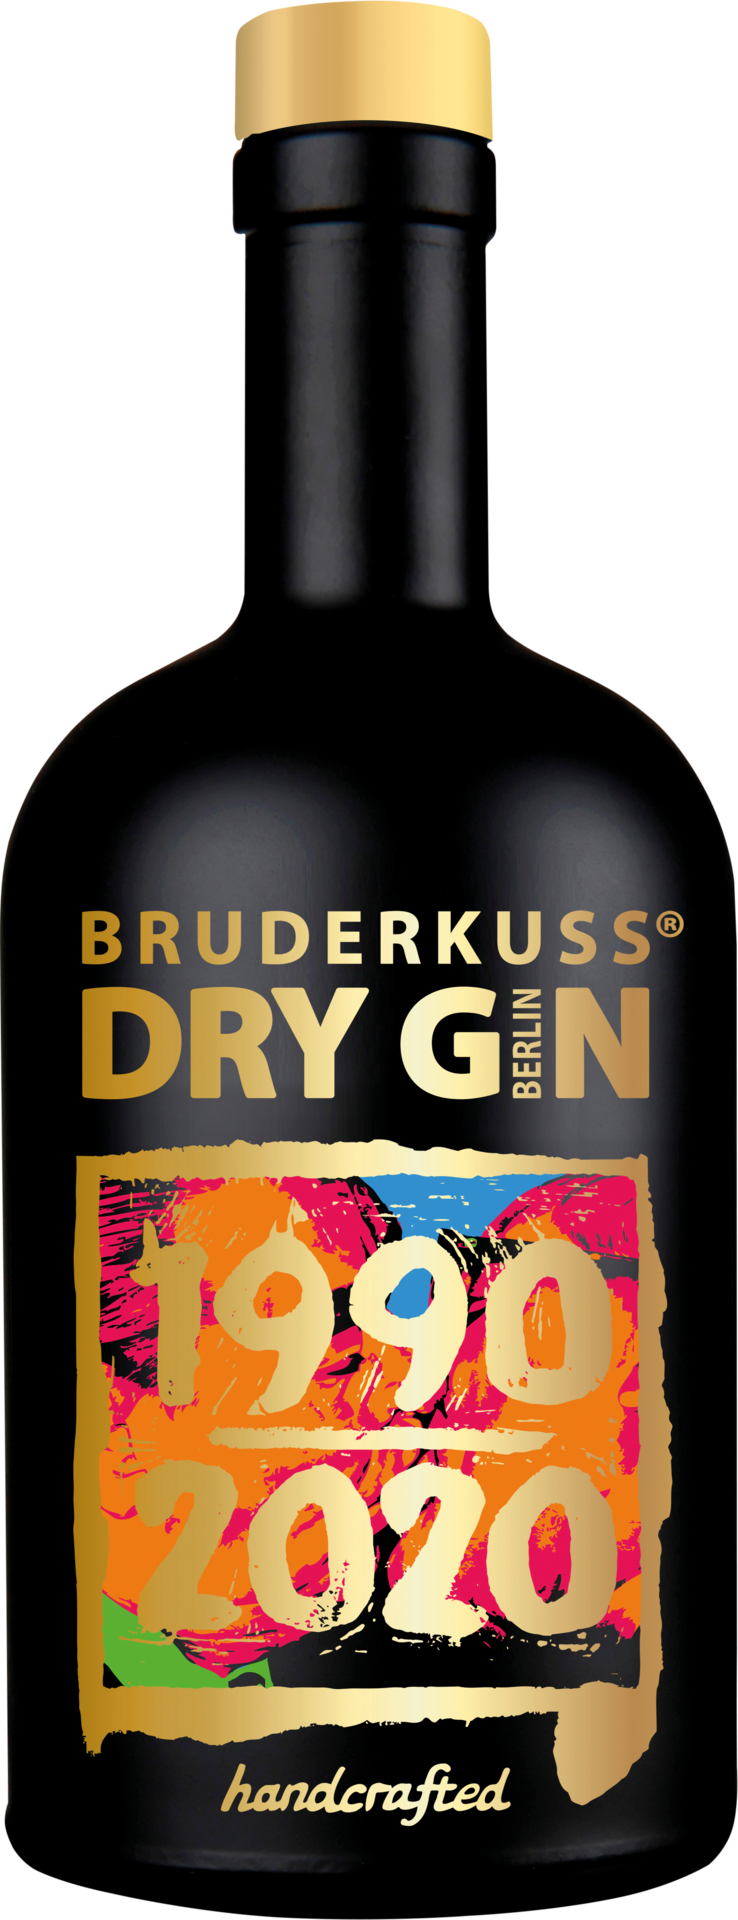 Bruderkuss Gin 30 Jahre Deutsche Einheit